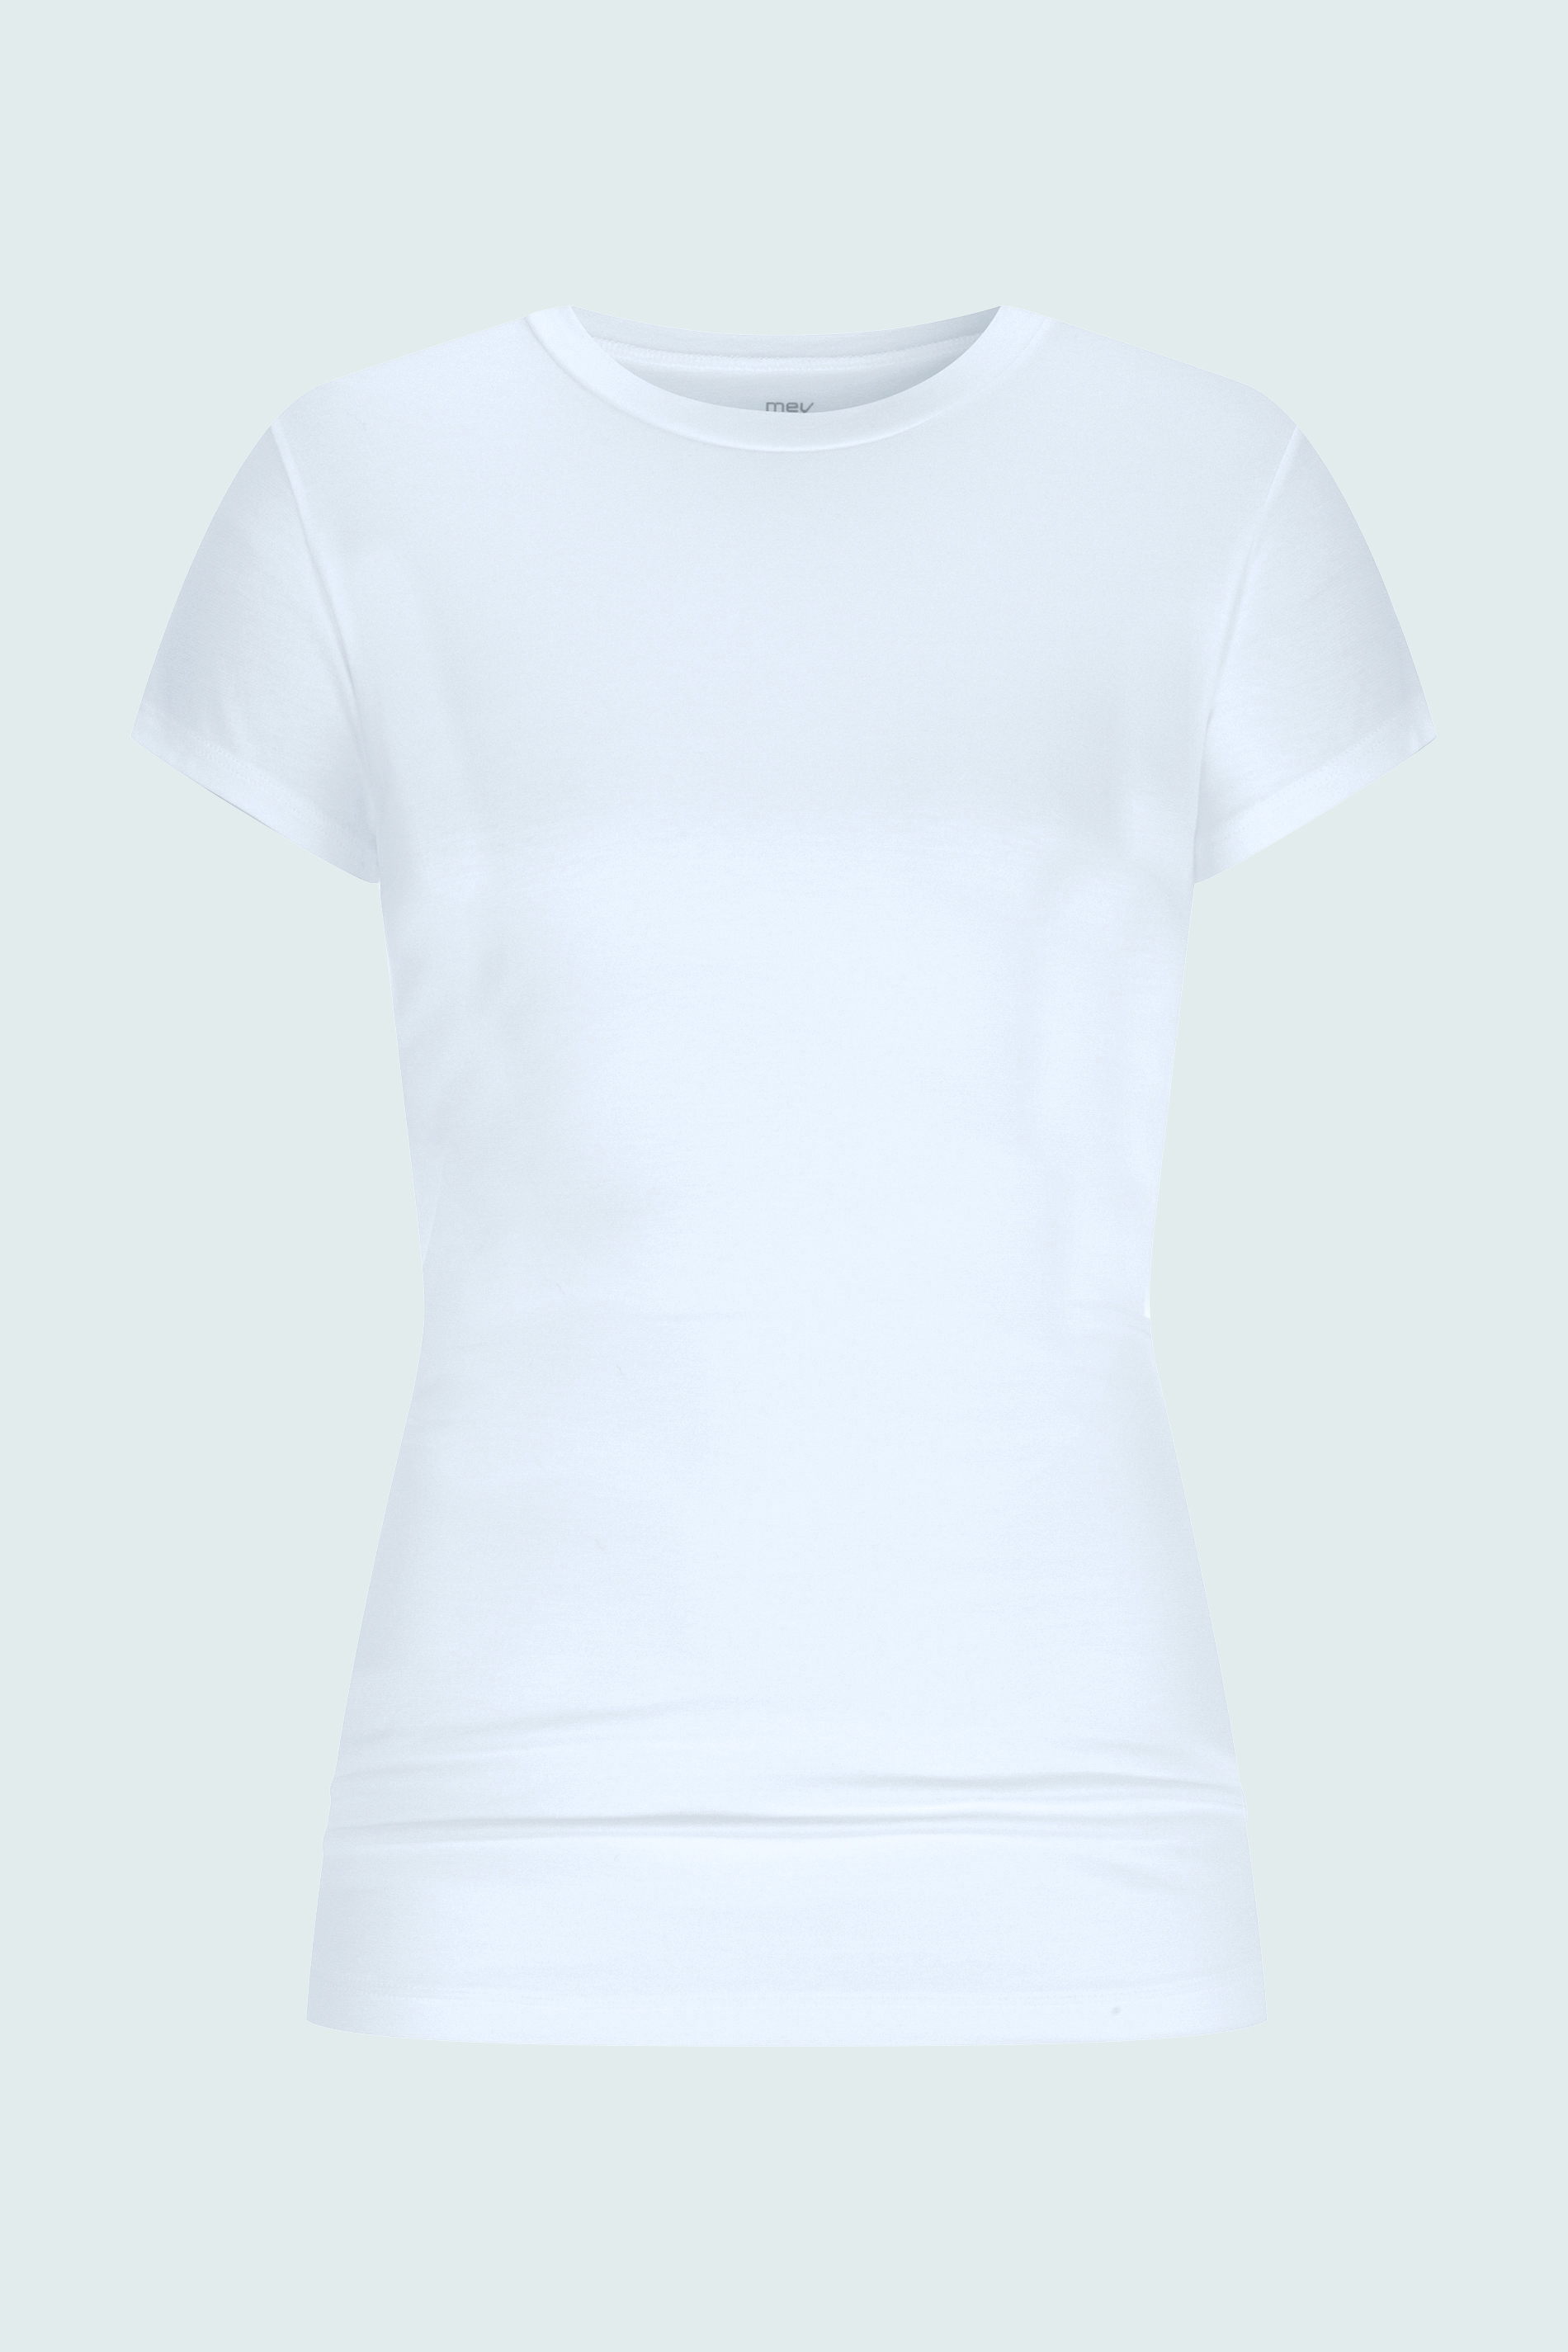 T-Shirt Weiss Serie Cotton Pure Freisteller | mey®